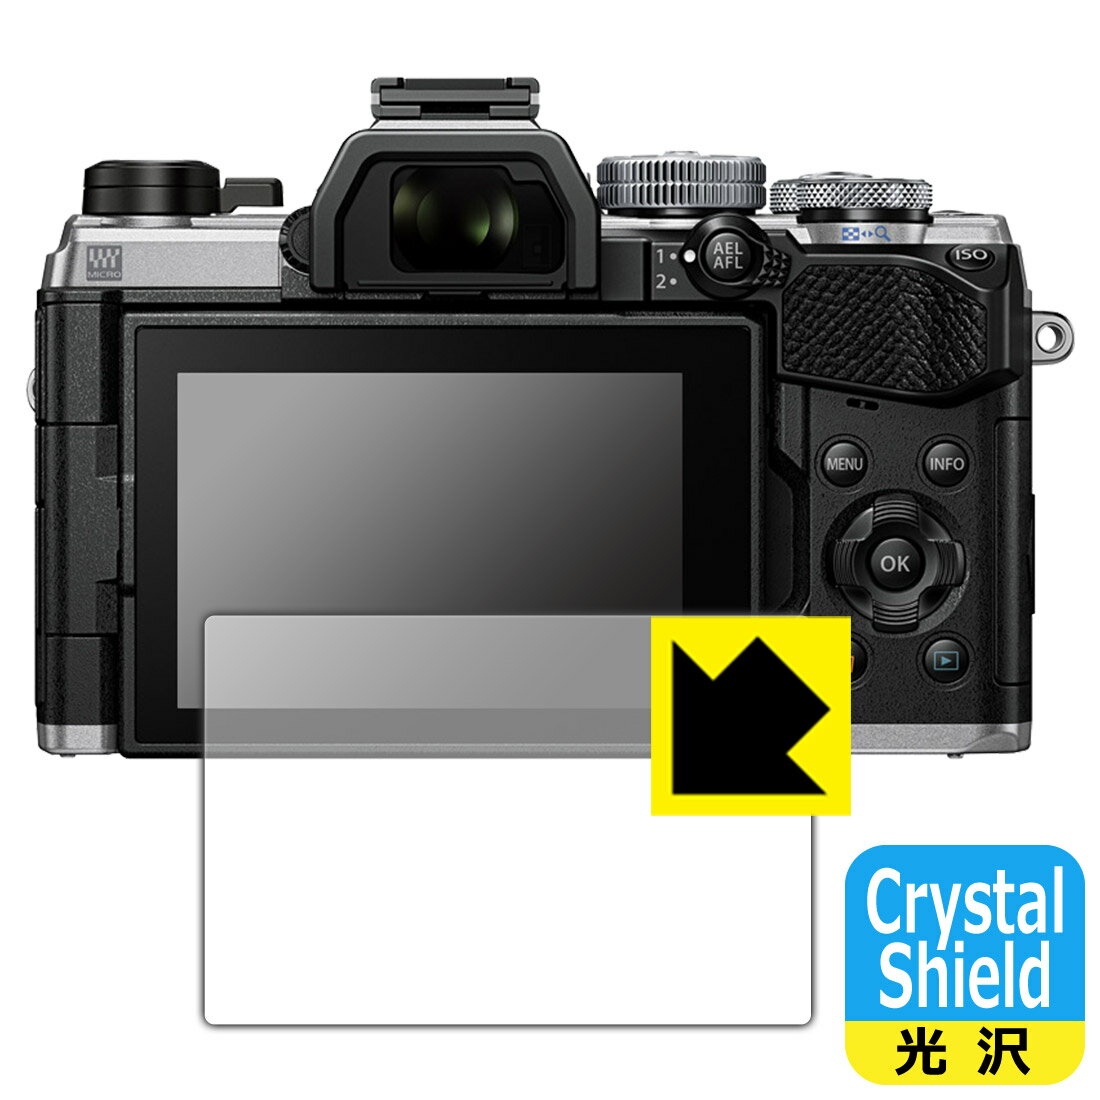 Crystal Shield【光沢】保護フィルム OM SYSTEM OM-5 (3枚セット) 日本製 自社製造直販